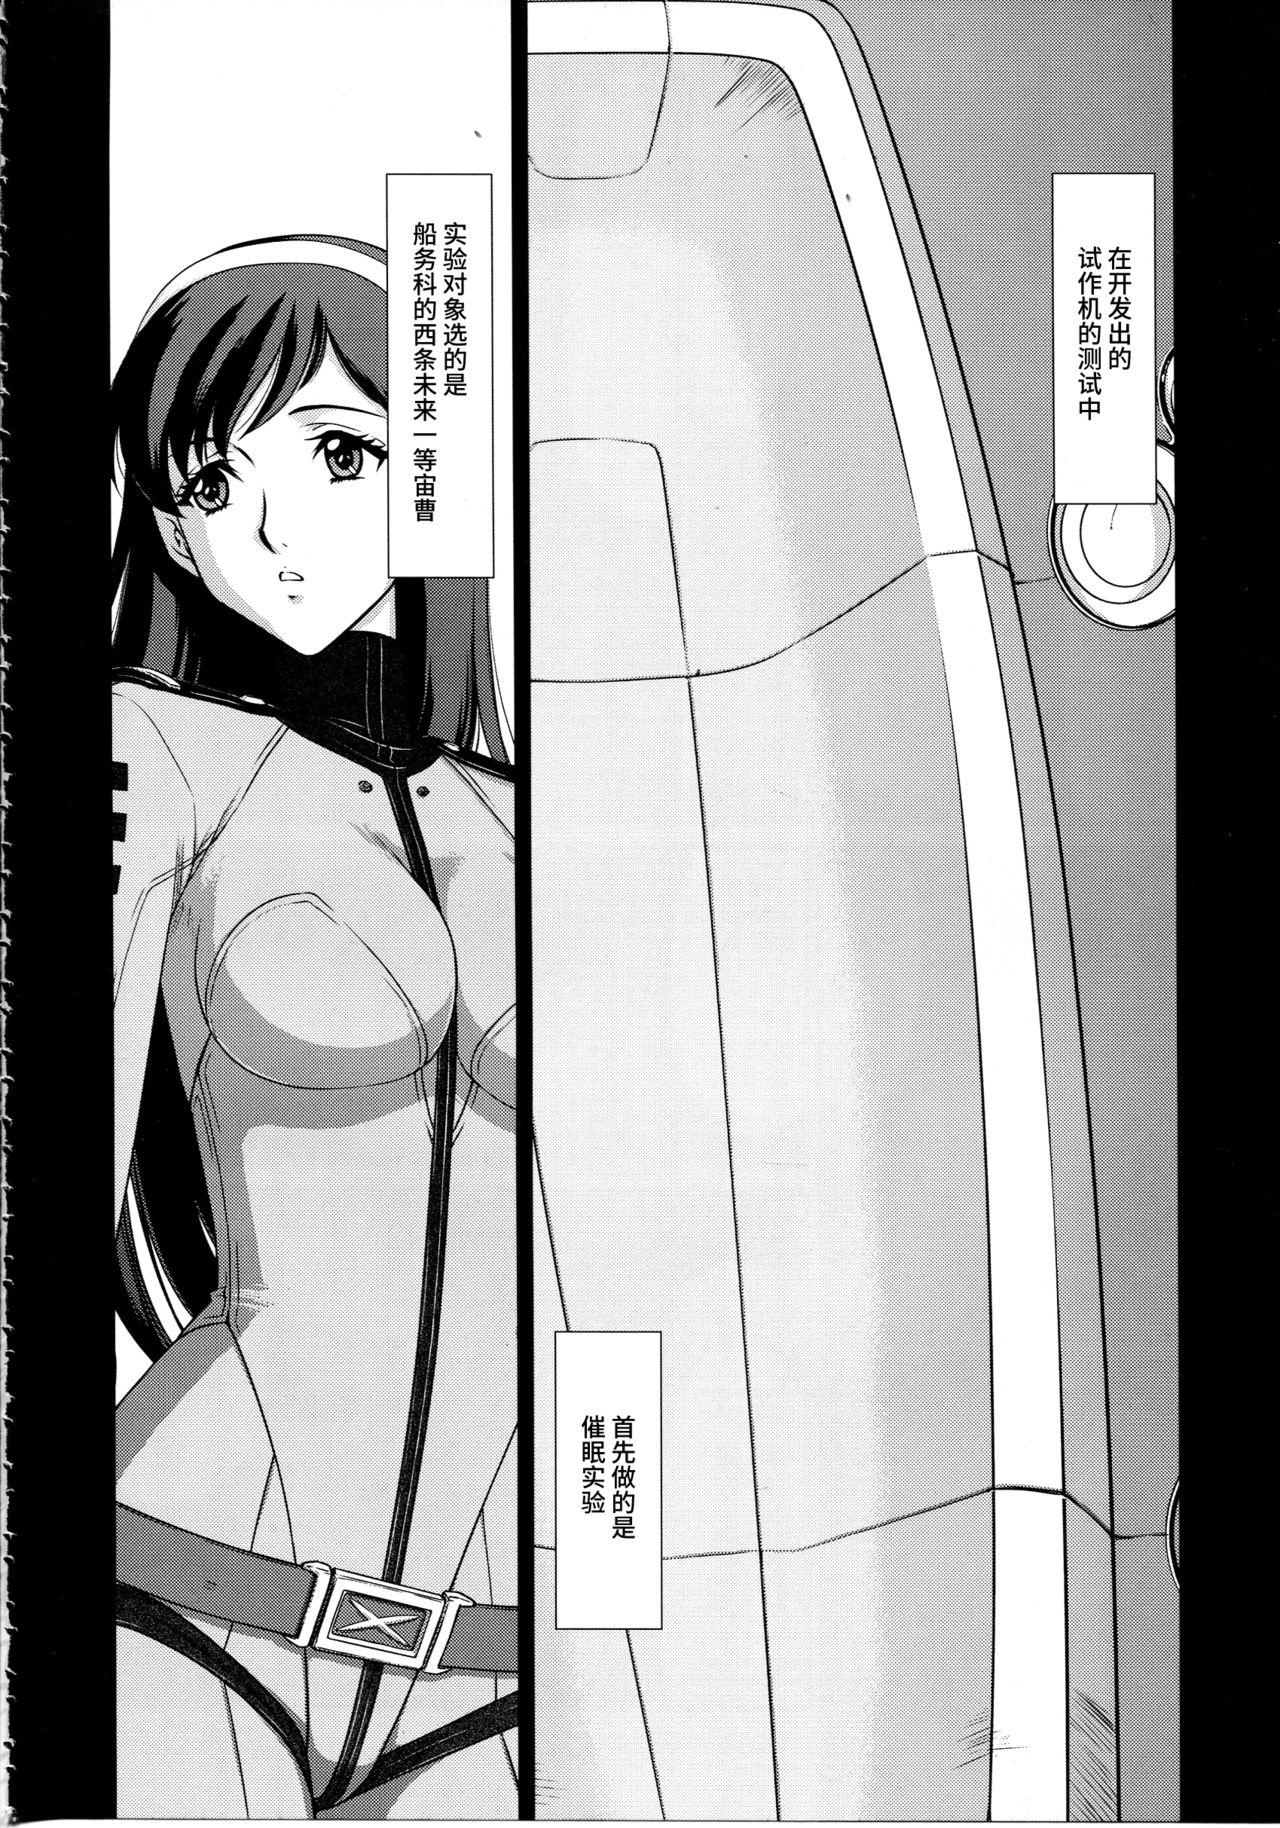 Xxx Yuki no Shizuku - Space battleship yamato 2199 Cumfacial - Page 5